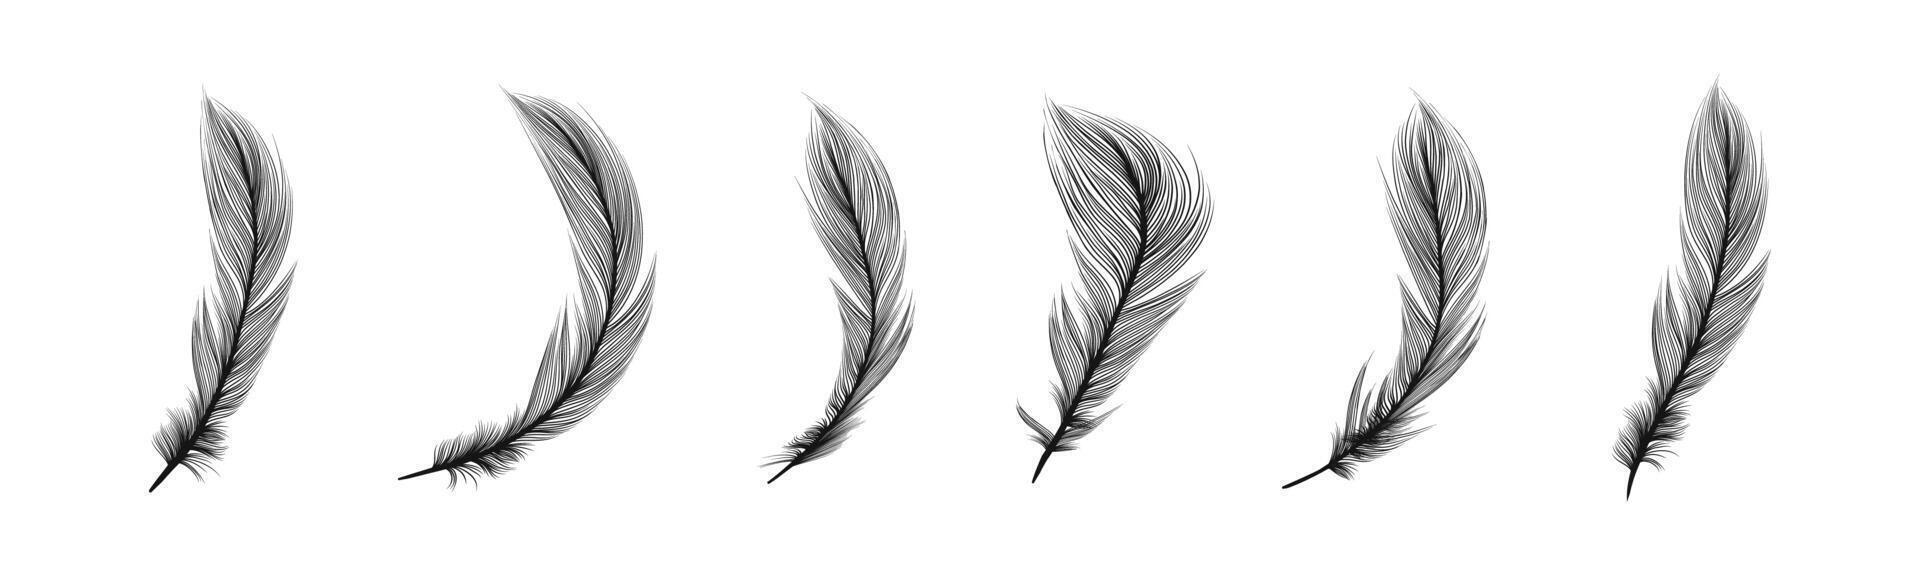 Bird feathers set. Teathers illustration vector